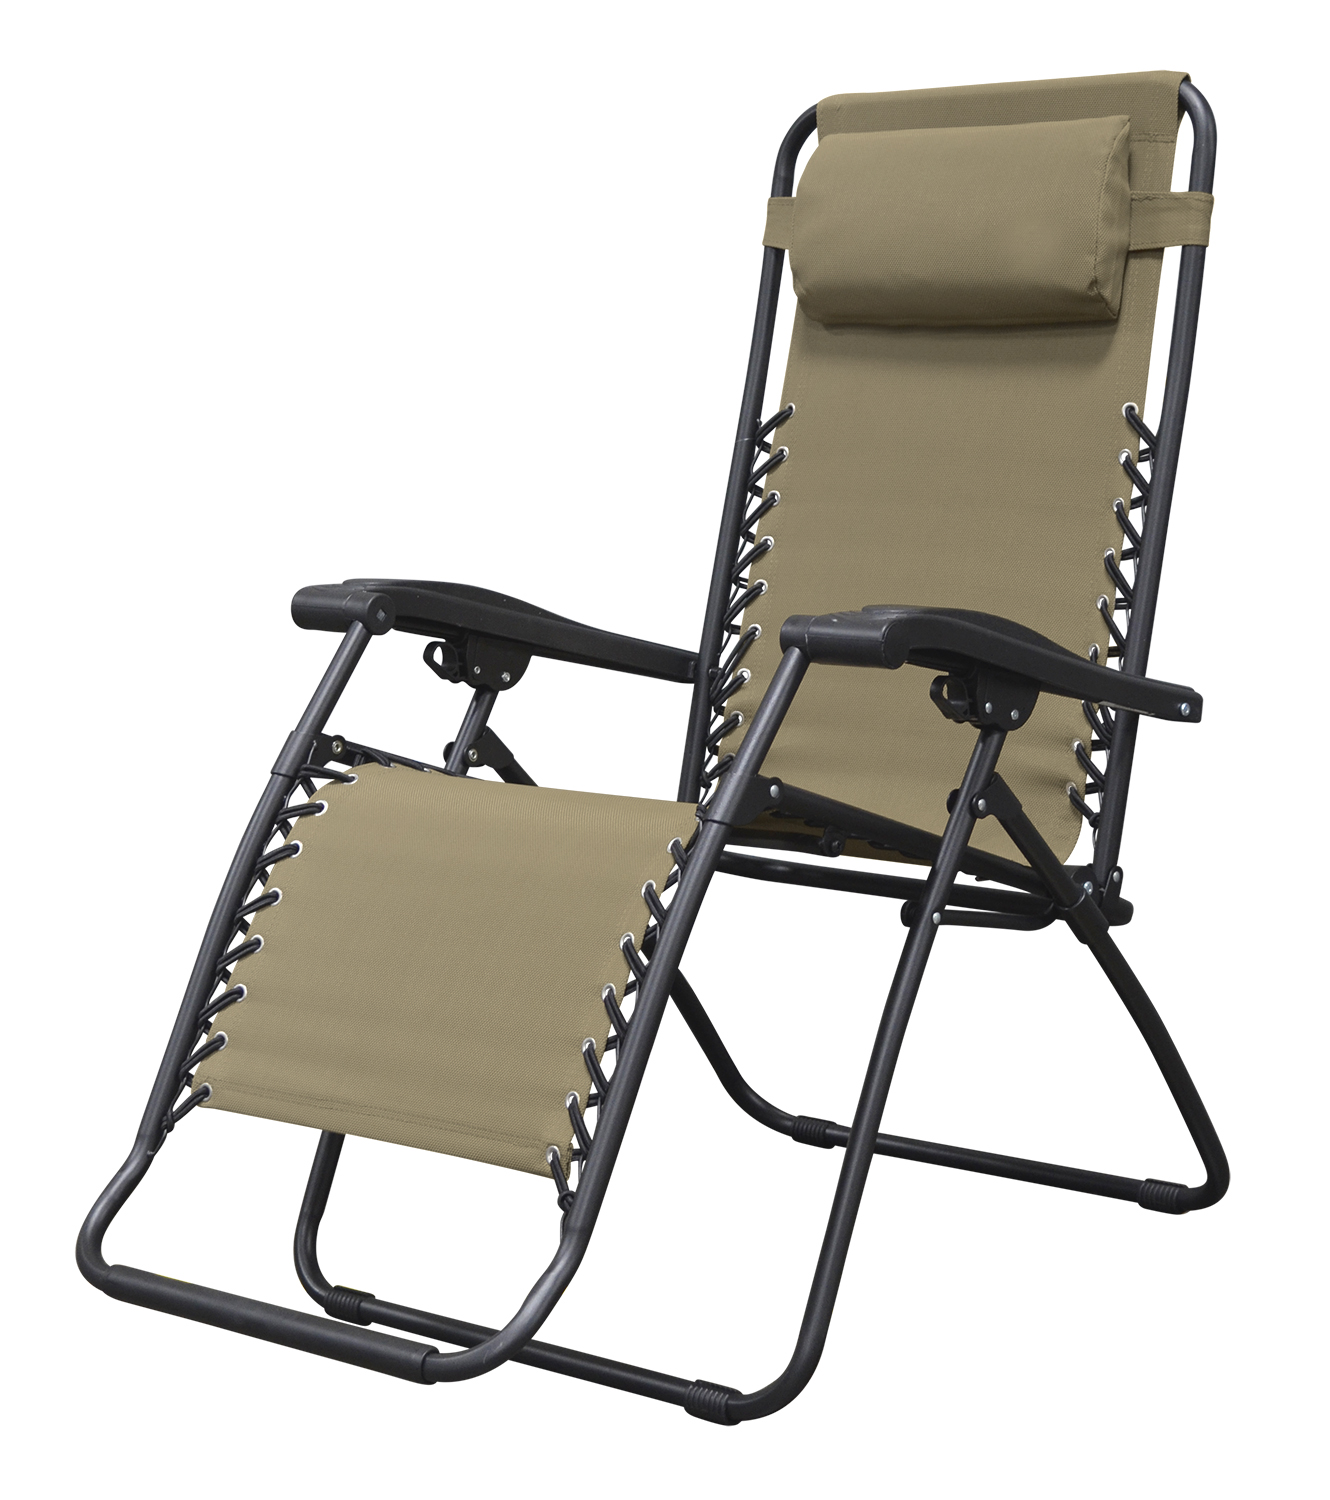 Caravan Sports Zero Gravity Chair, Tan - image 1 of 4